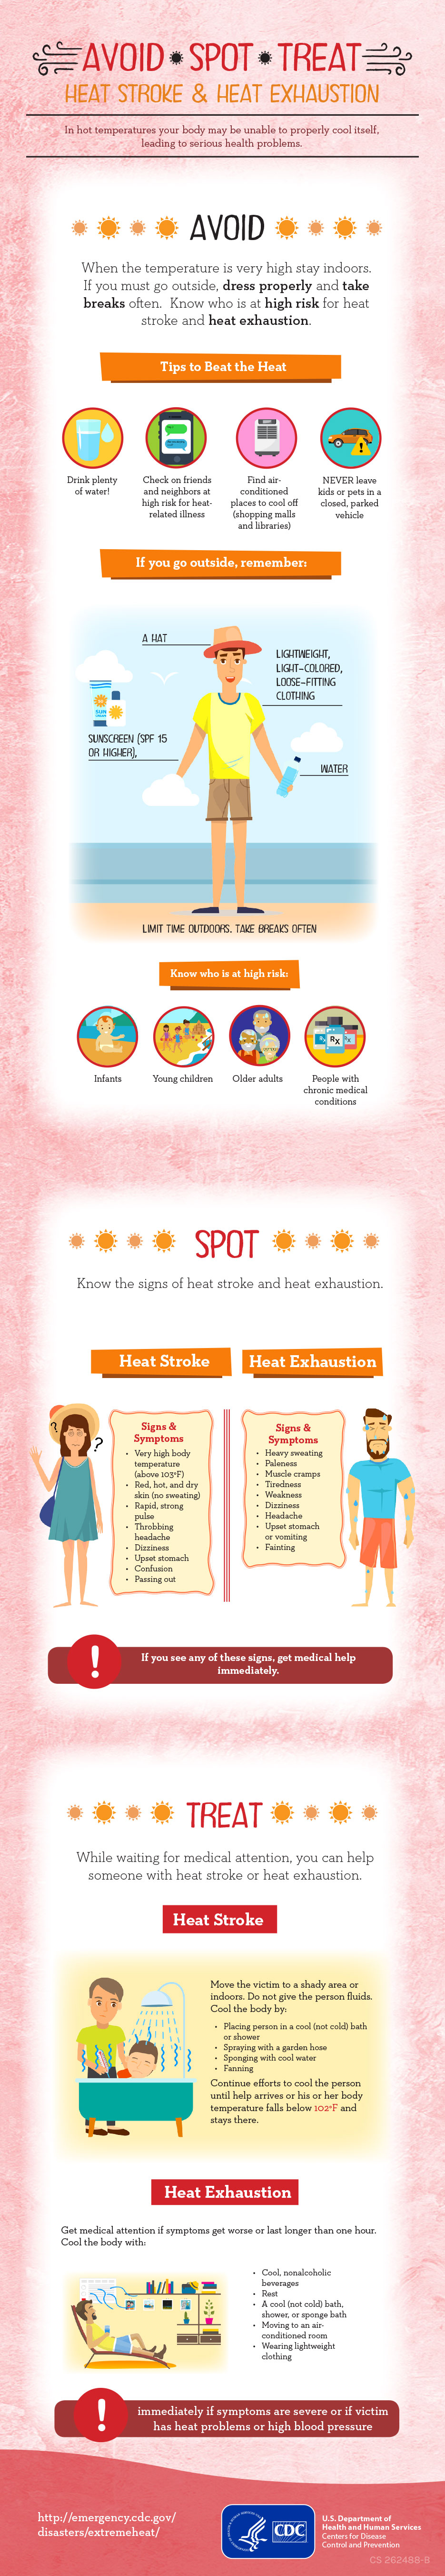 Infographic: Avoid Spot Treat: Heat Stroke & Heat Exhaustion:Avoid Spot Treat: Heat Stroke & Heat Exhaustion